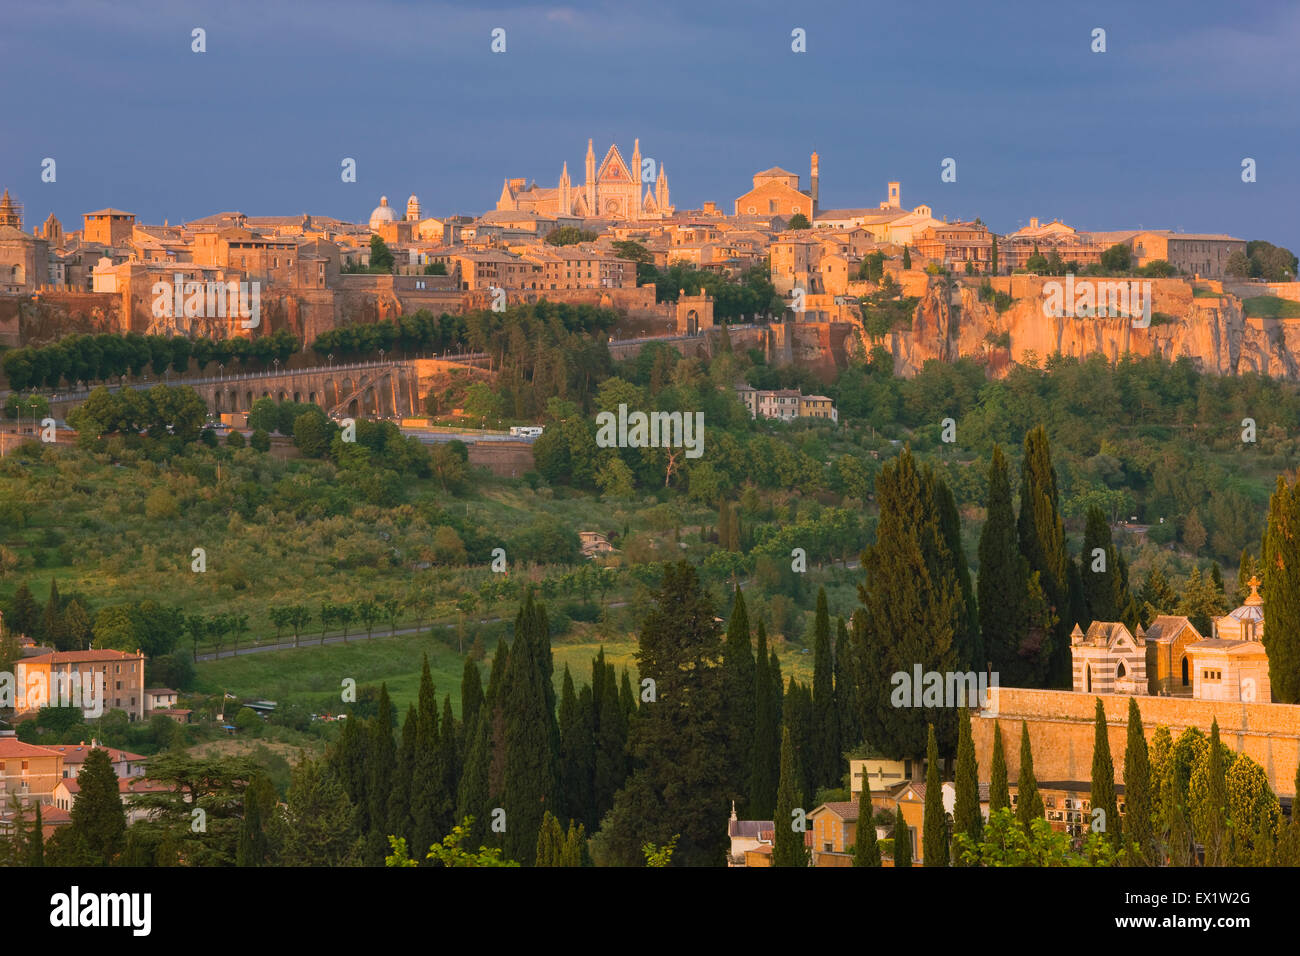 Vue de la colline de la ville médiévale d'Orvieto, Ombrie, Italie Banque D'Images